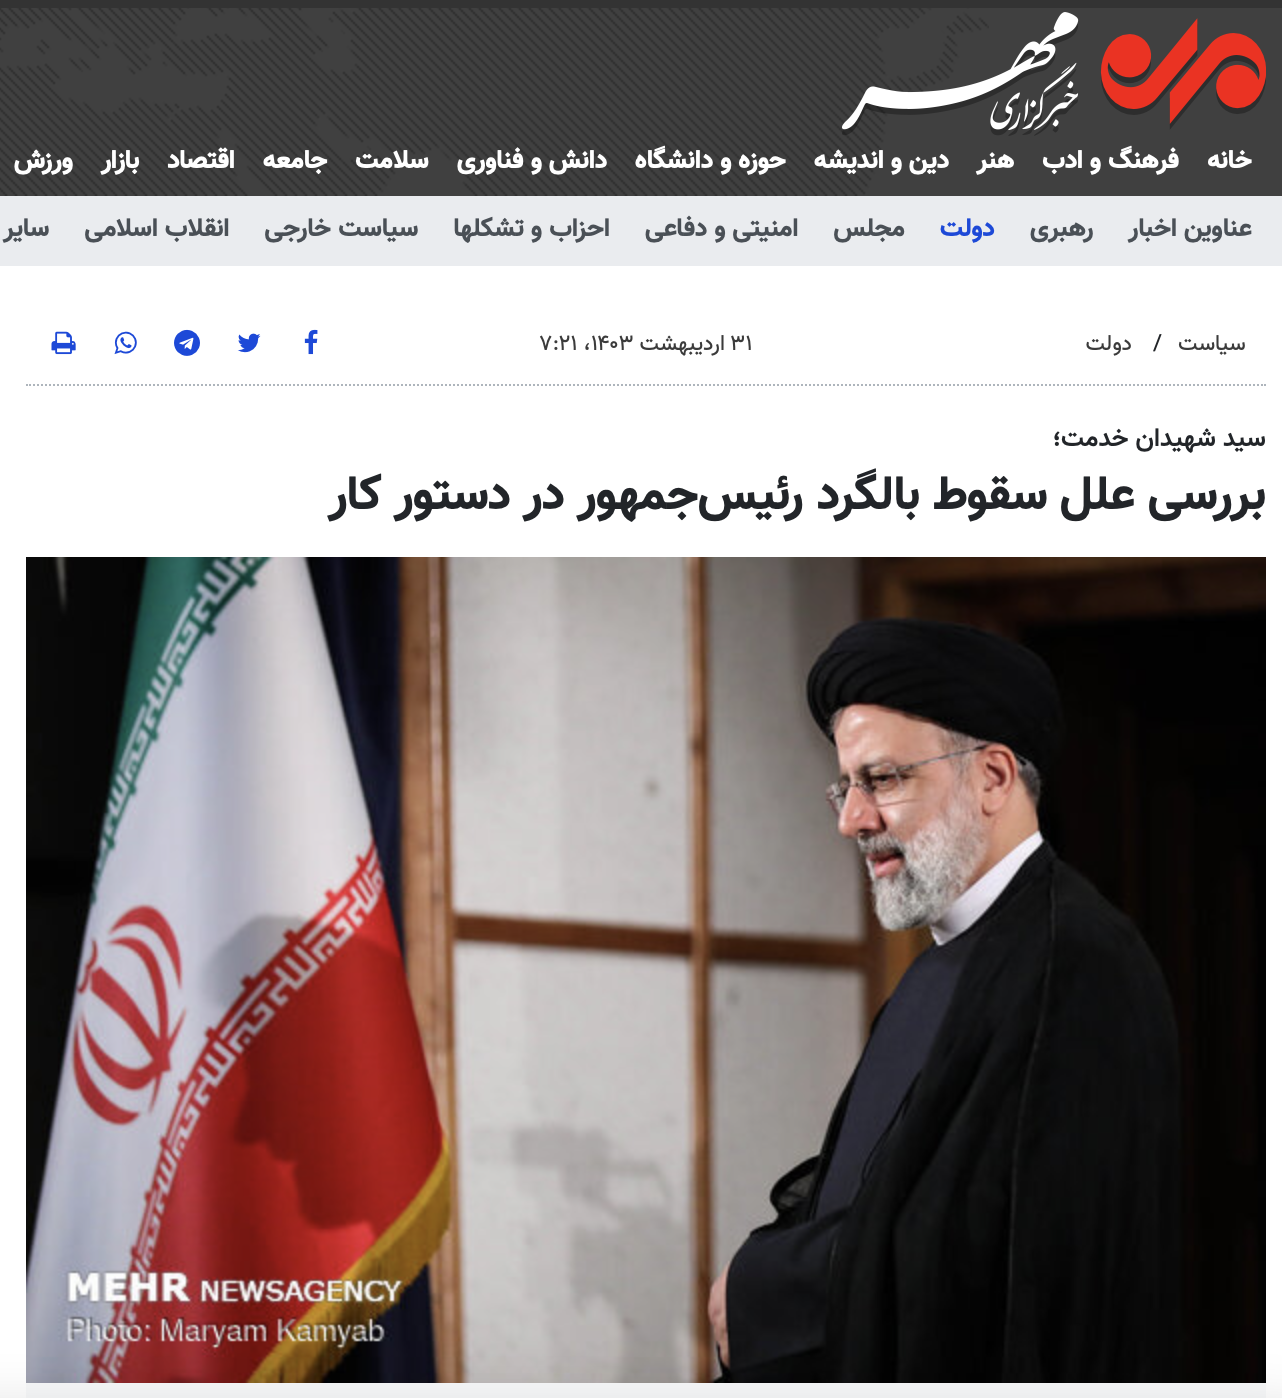 وكالة مُهر الإيرانية تنشر خبر وفاة إبراهيم رئيسي قبل الإعلان الرسمي